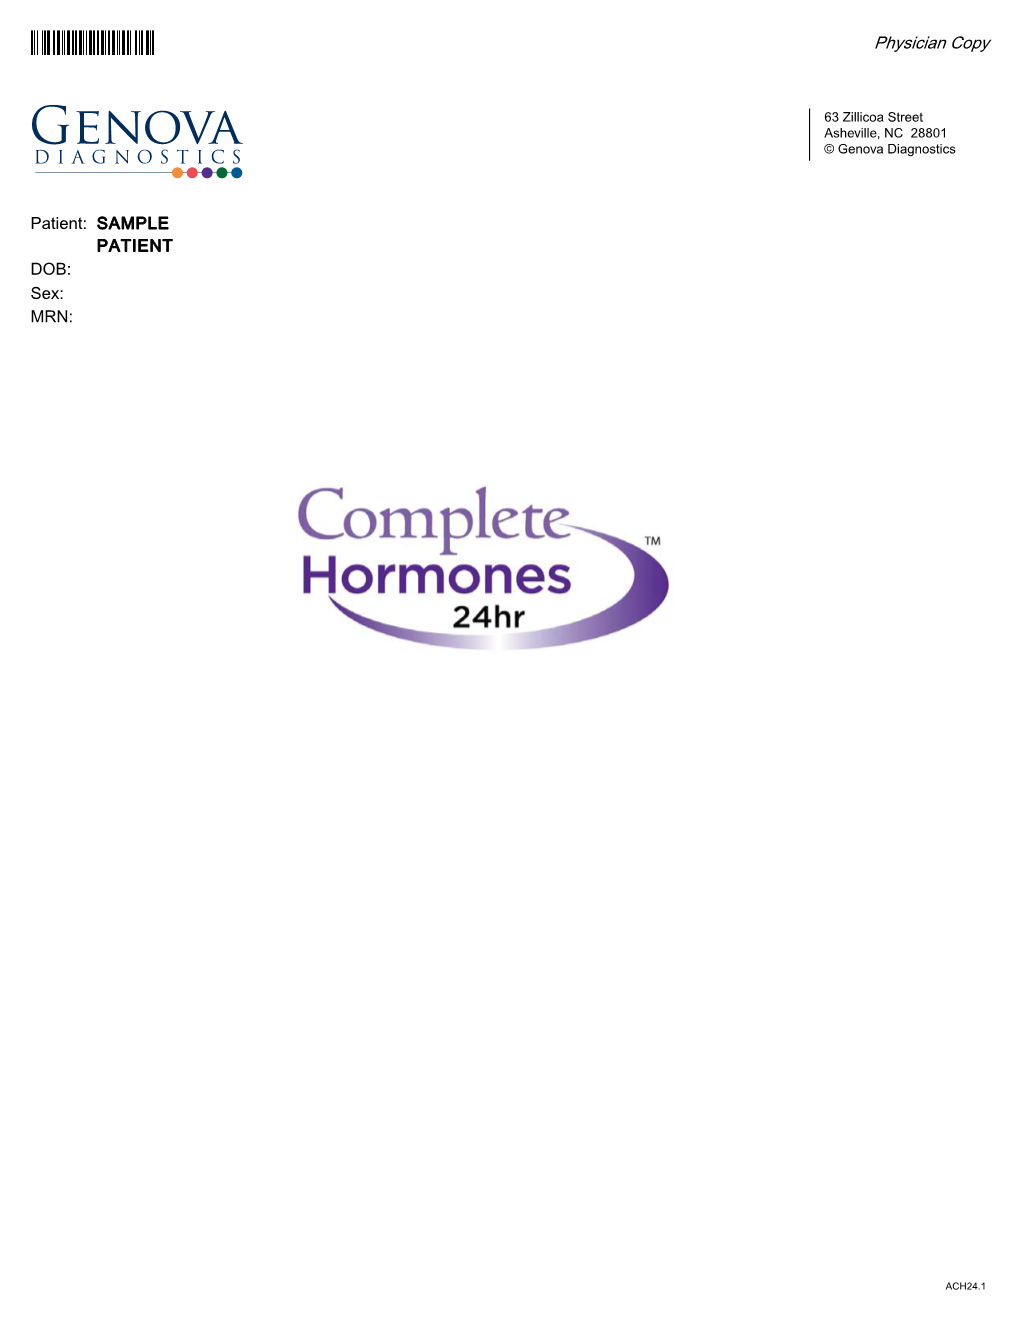 Complete Hormones Sample Report